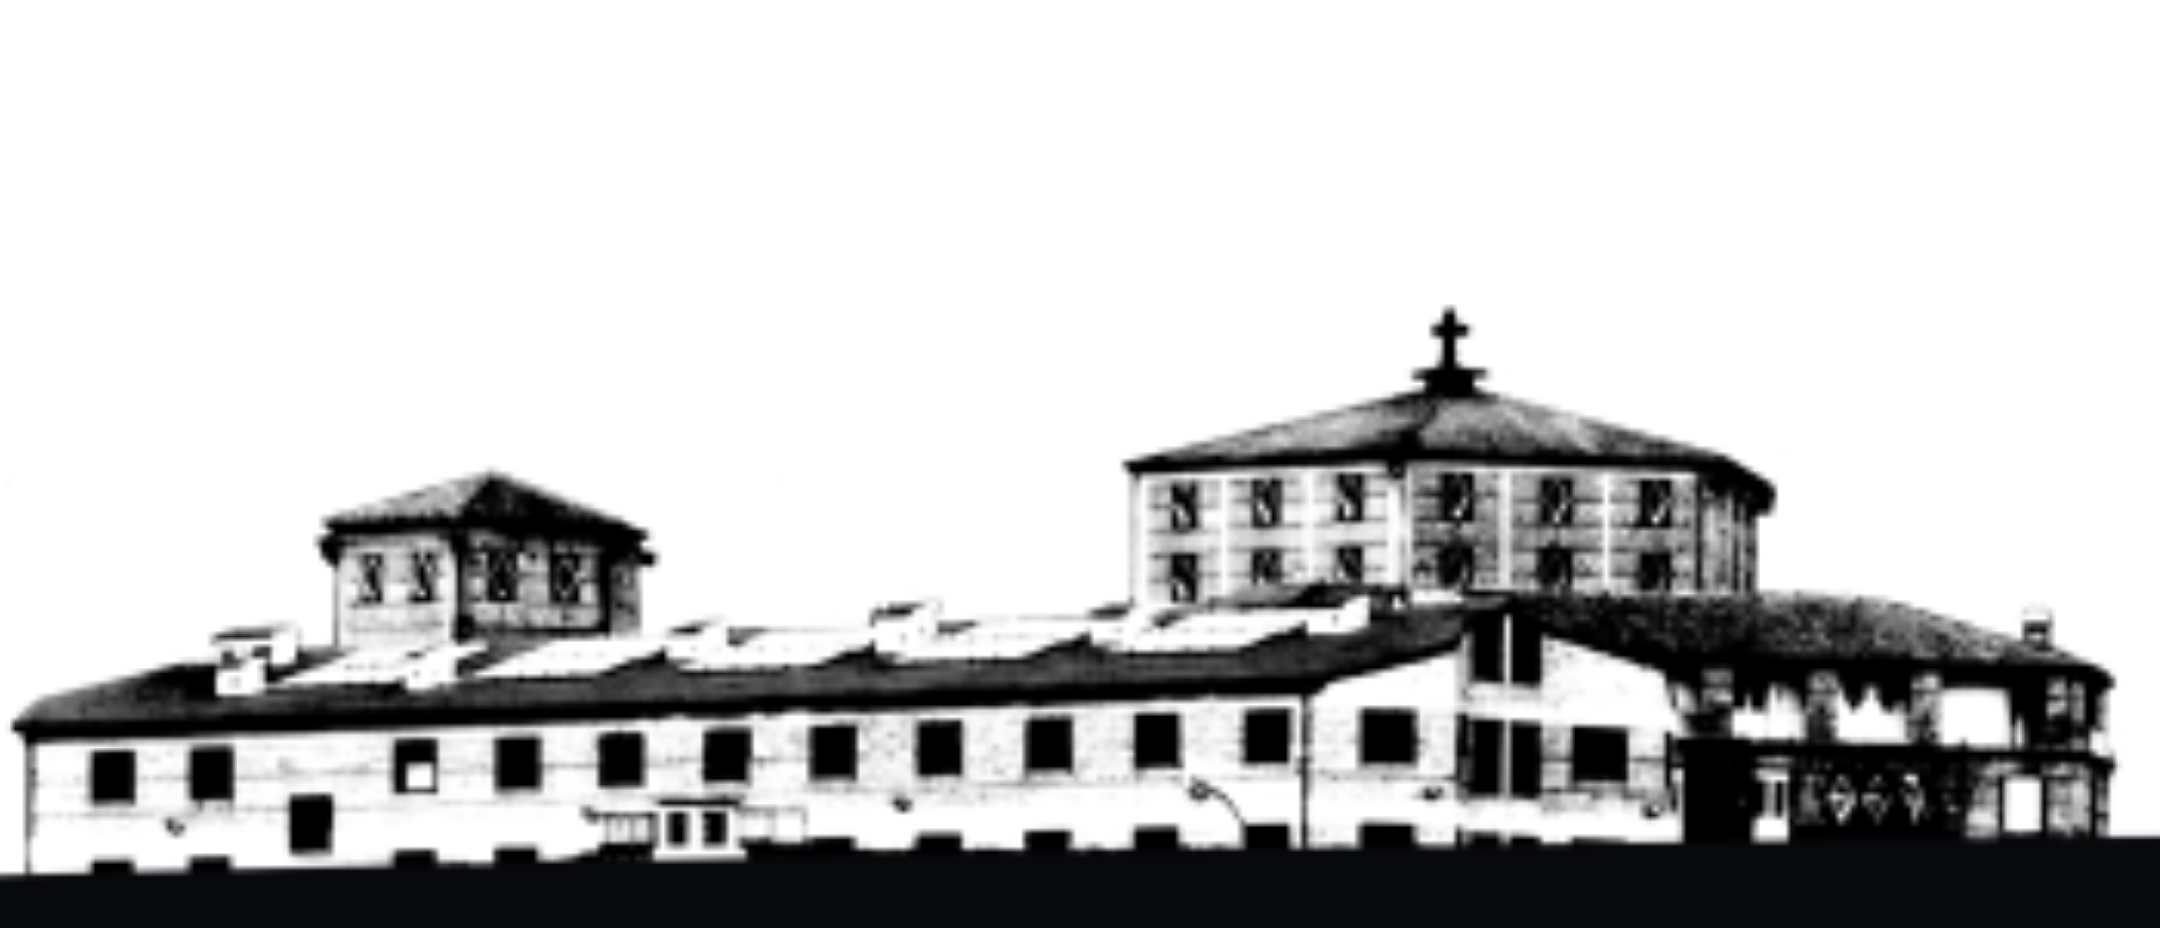 Sardegna colonia penitenziaria